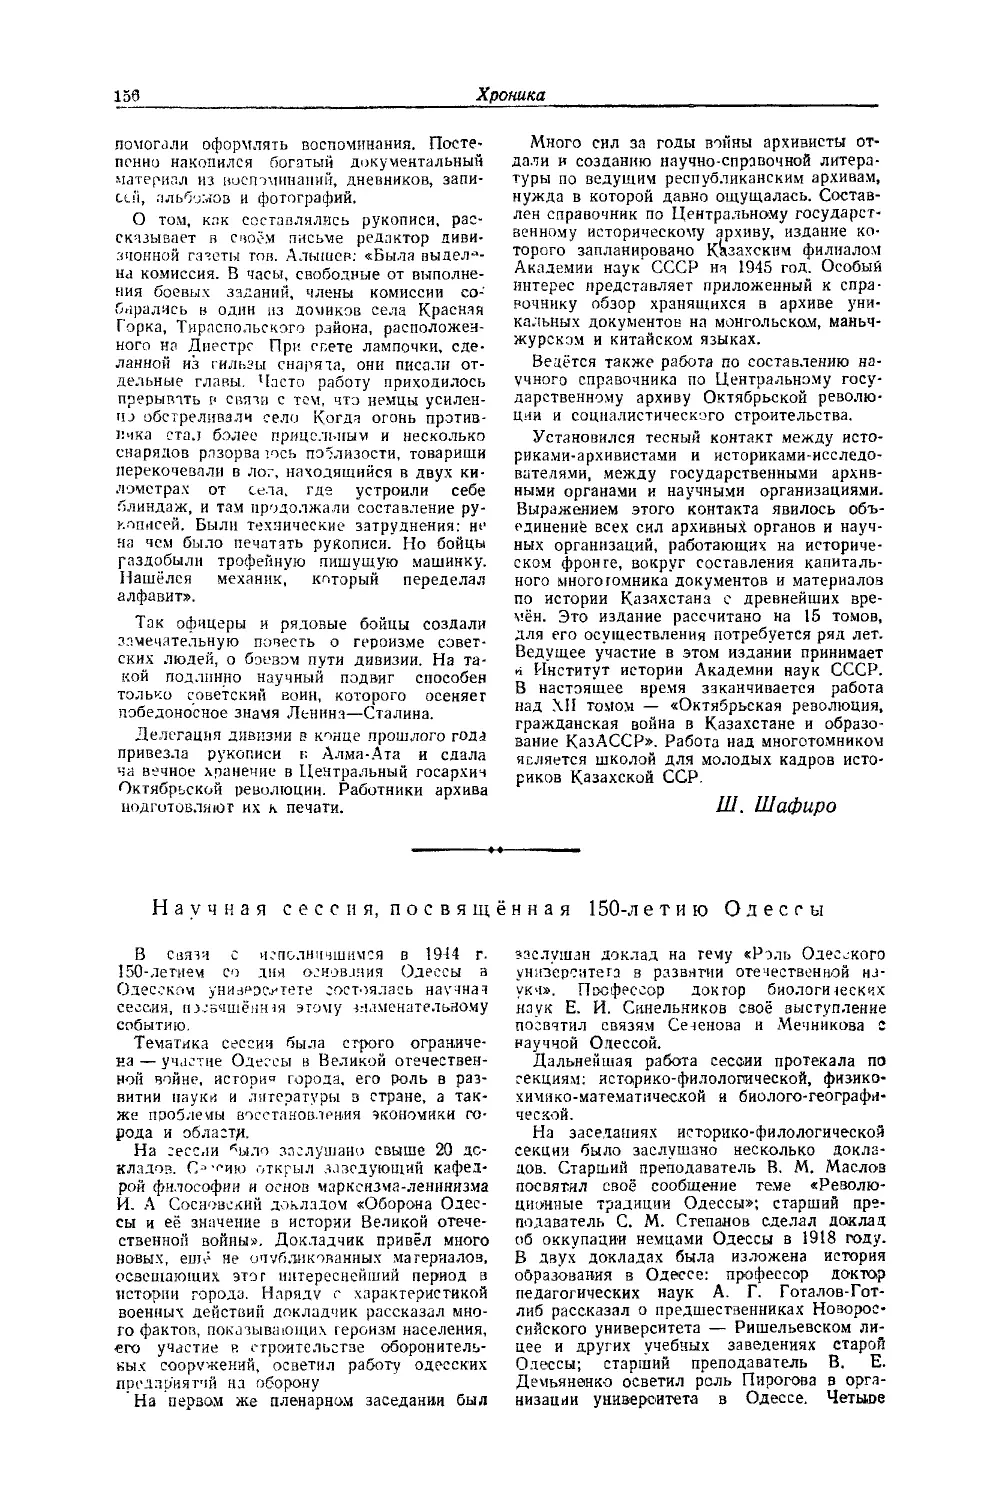 Недзведский А. — Научная сессия, посвящённая 150-летию Одессы